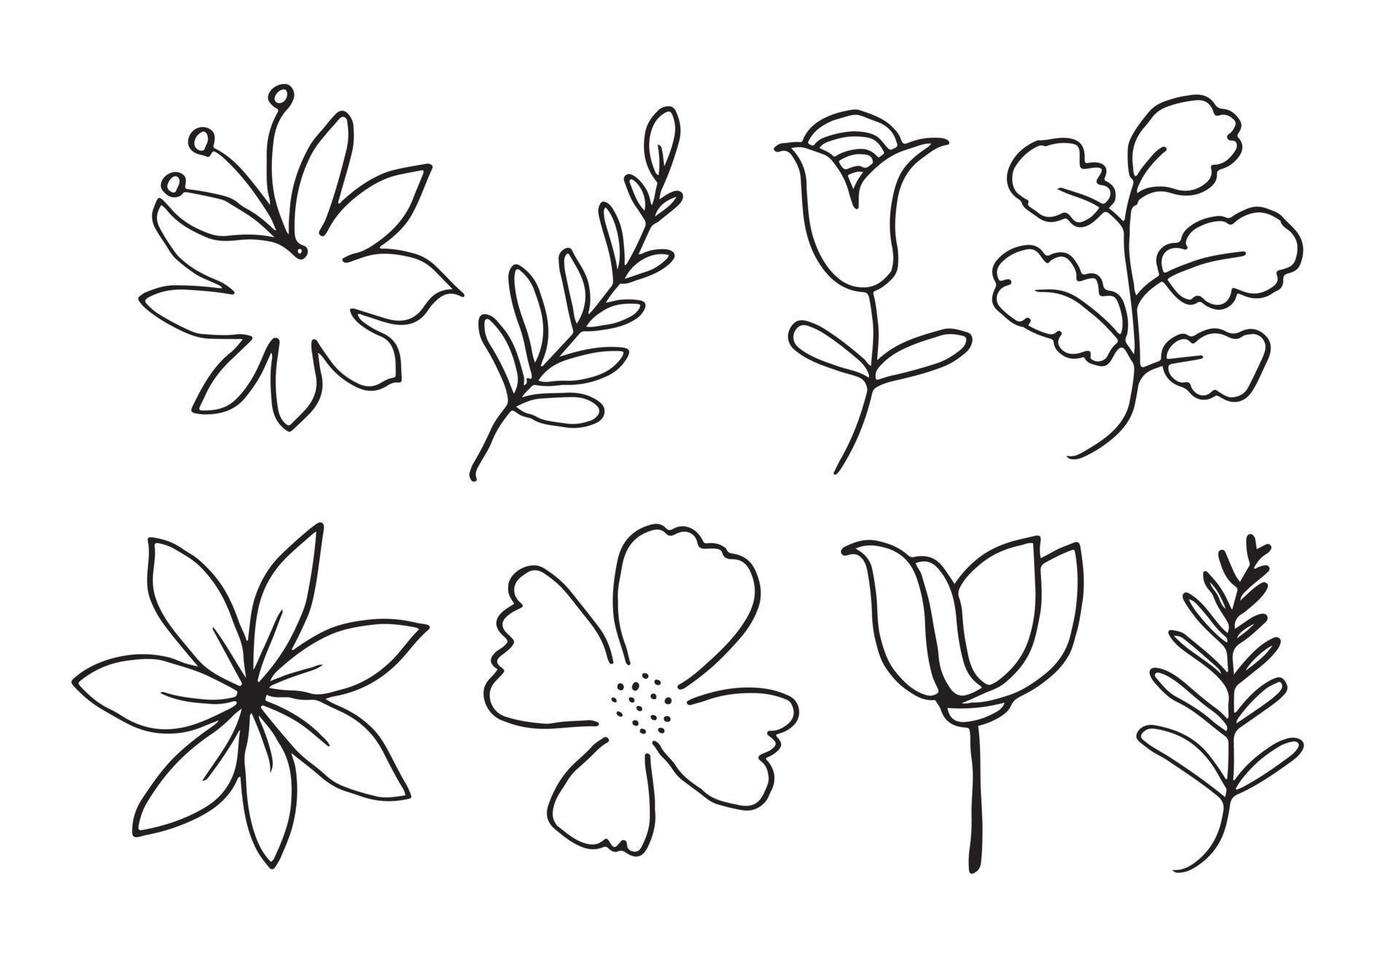 une collection d'images de fleurs dessinées à la main telles que des campanules, des chrysanthèmes, des tournesols, des fleurs de coton et des feuilles tropicales vecteur